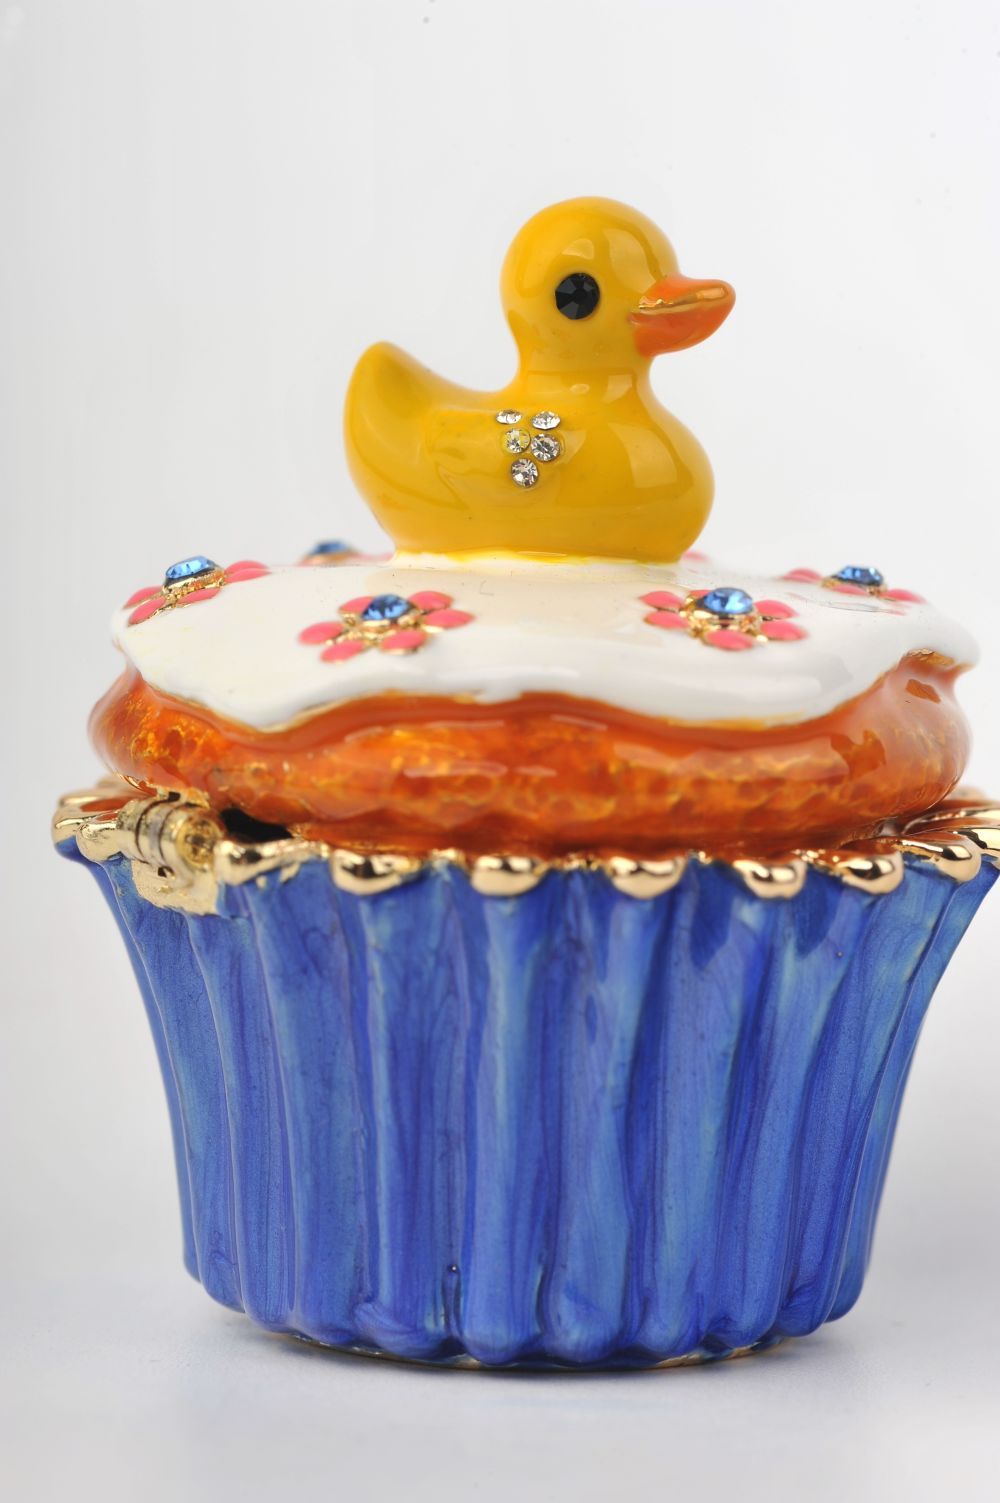 Keren Kopal Yellow Duck on Blue Cupcake  47.00